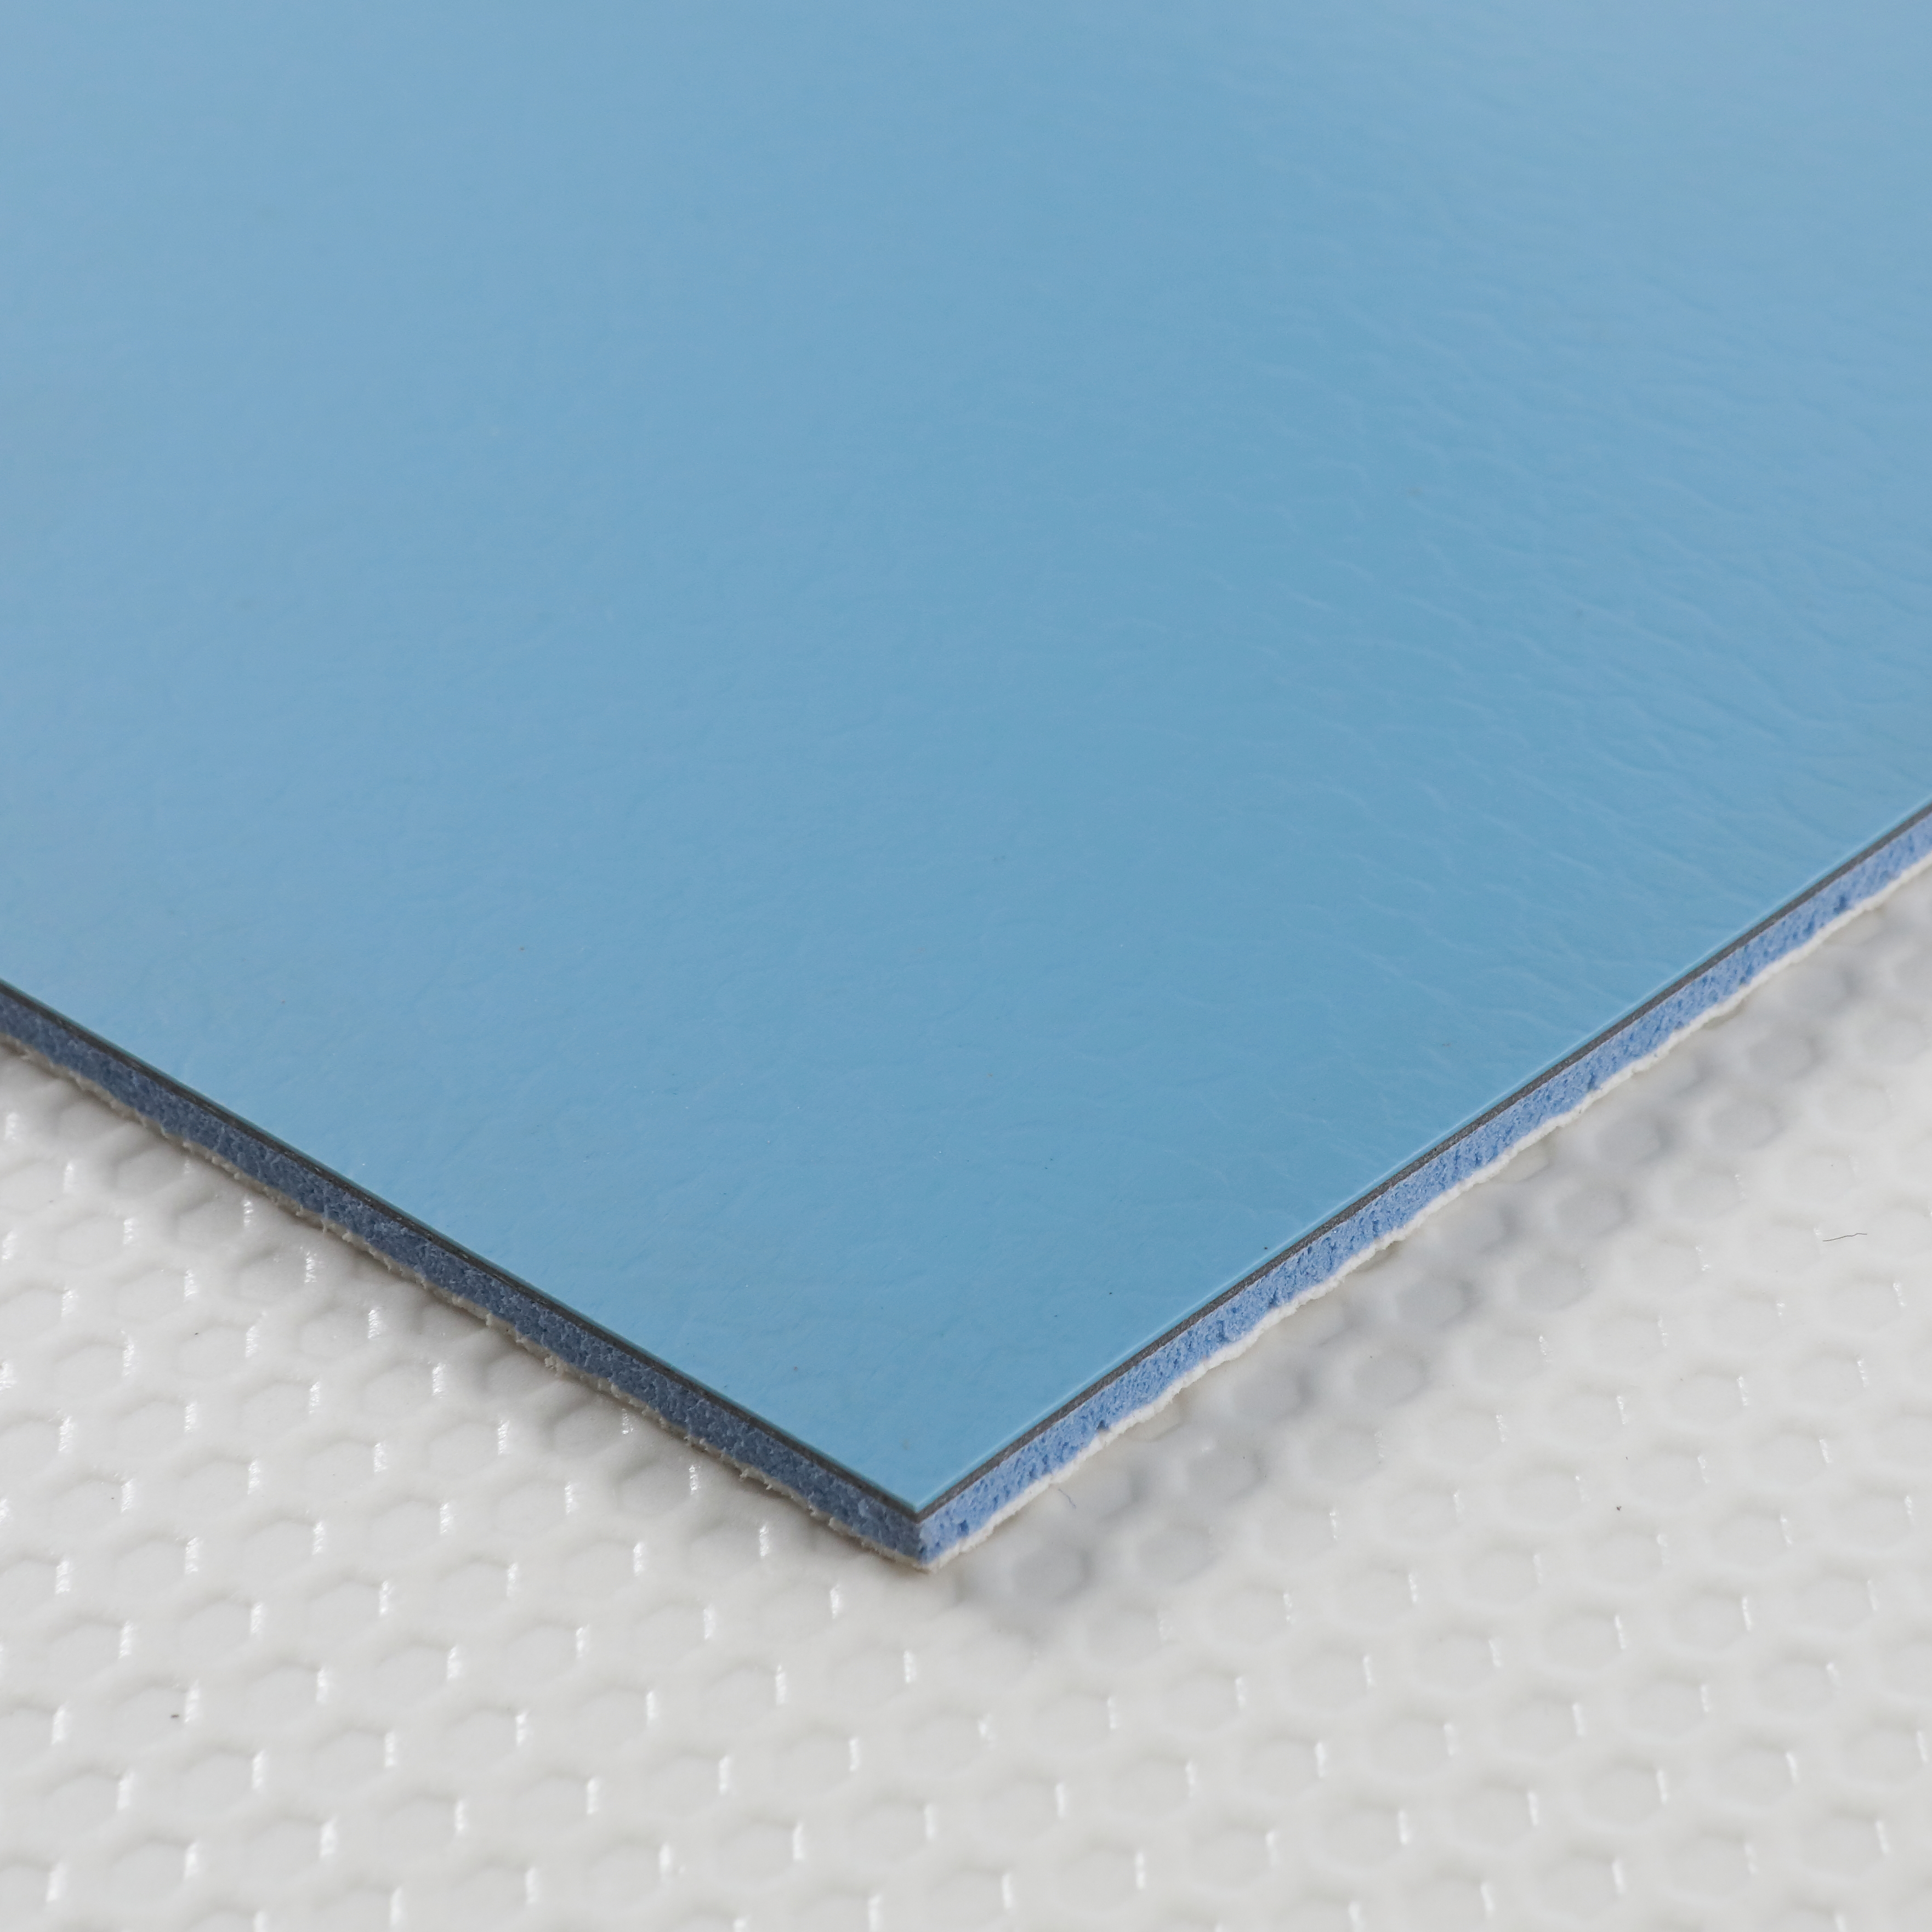 Textured PVC Flooring For Tennis Court Sheet